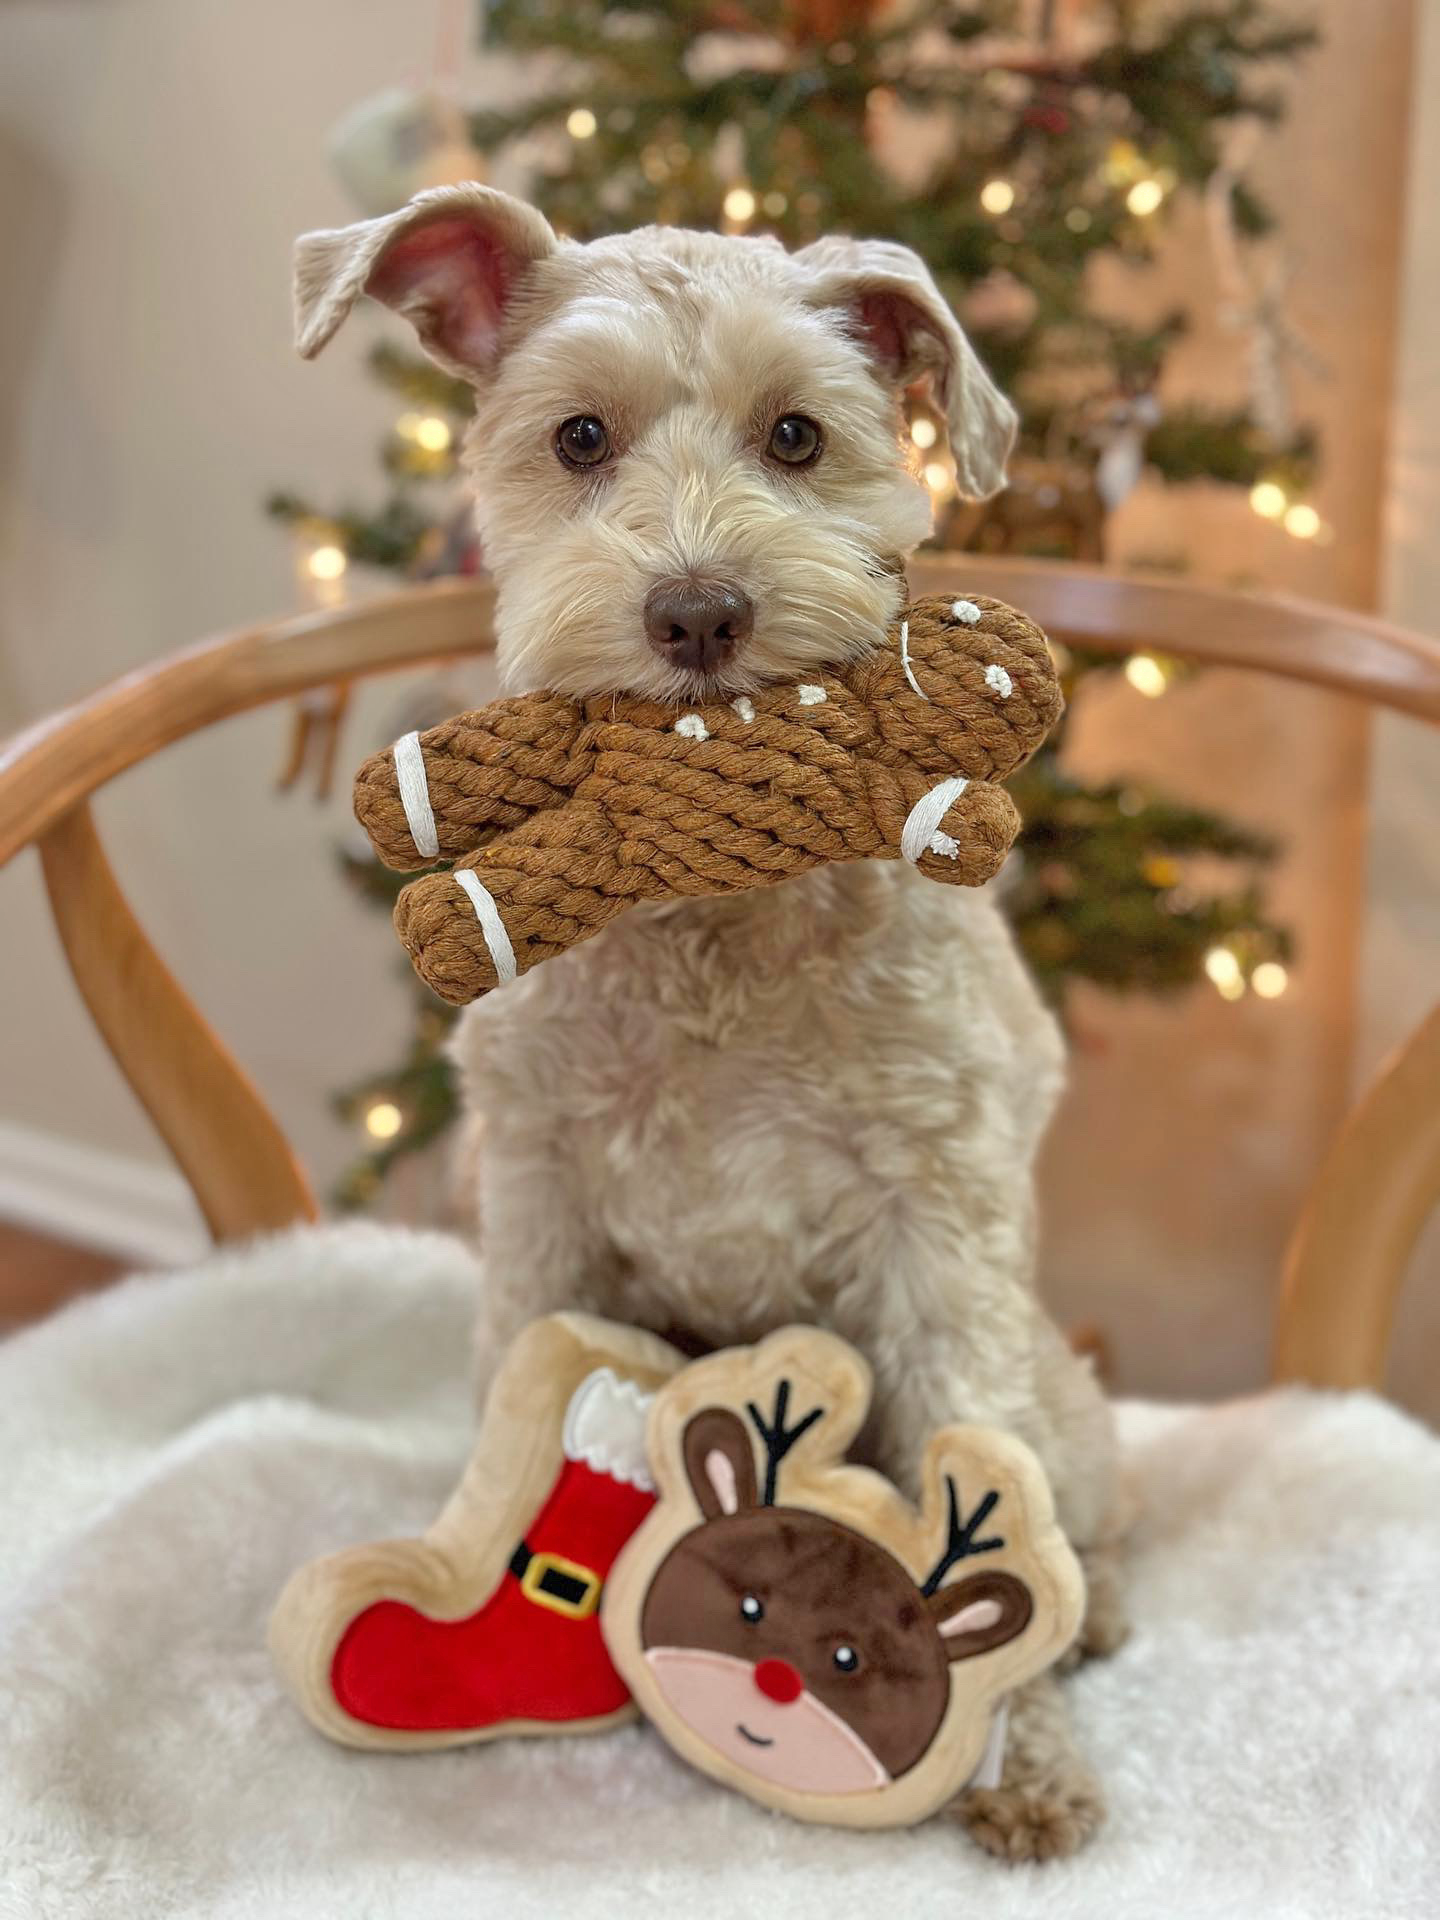 Midlee Santa Boot Sugar Cookie Dog Toy